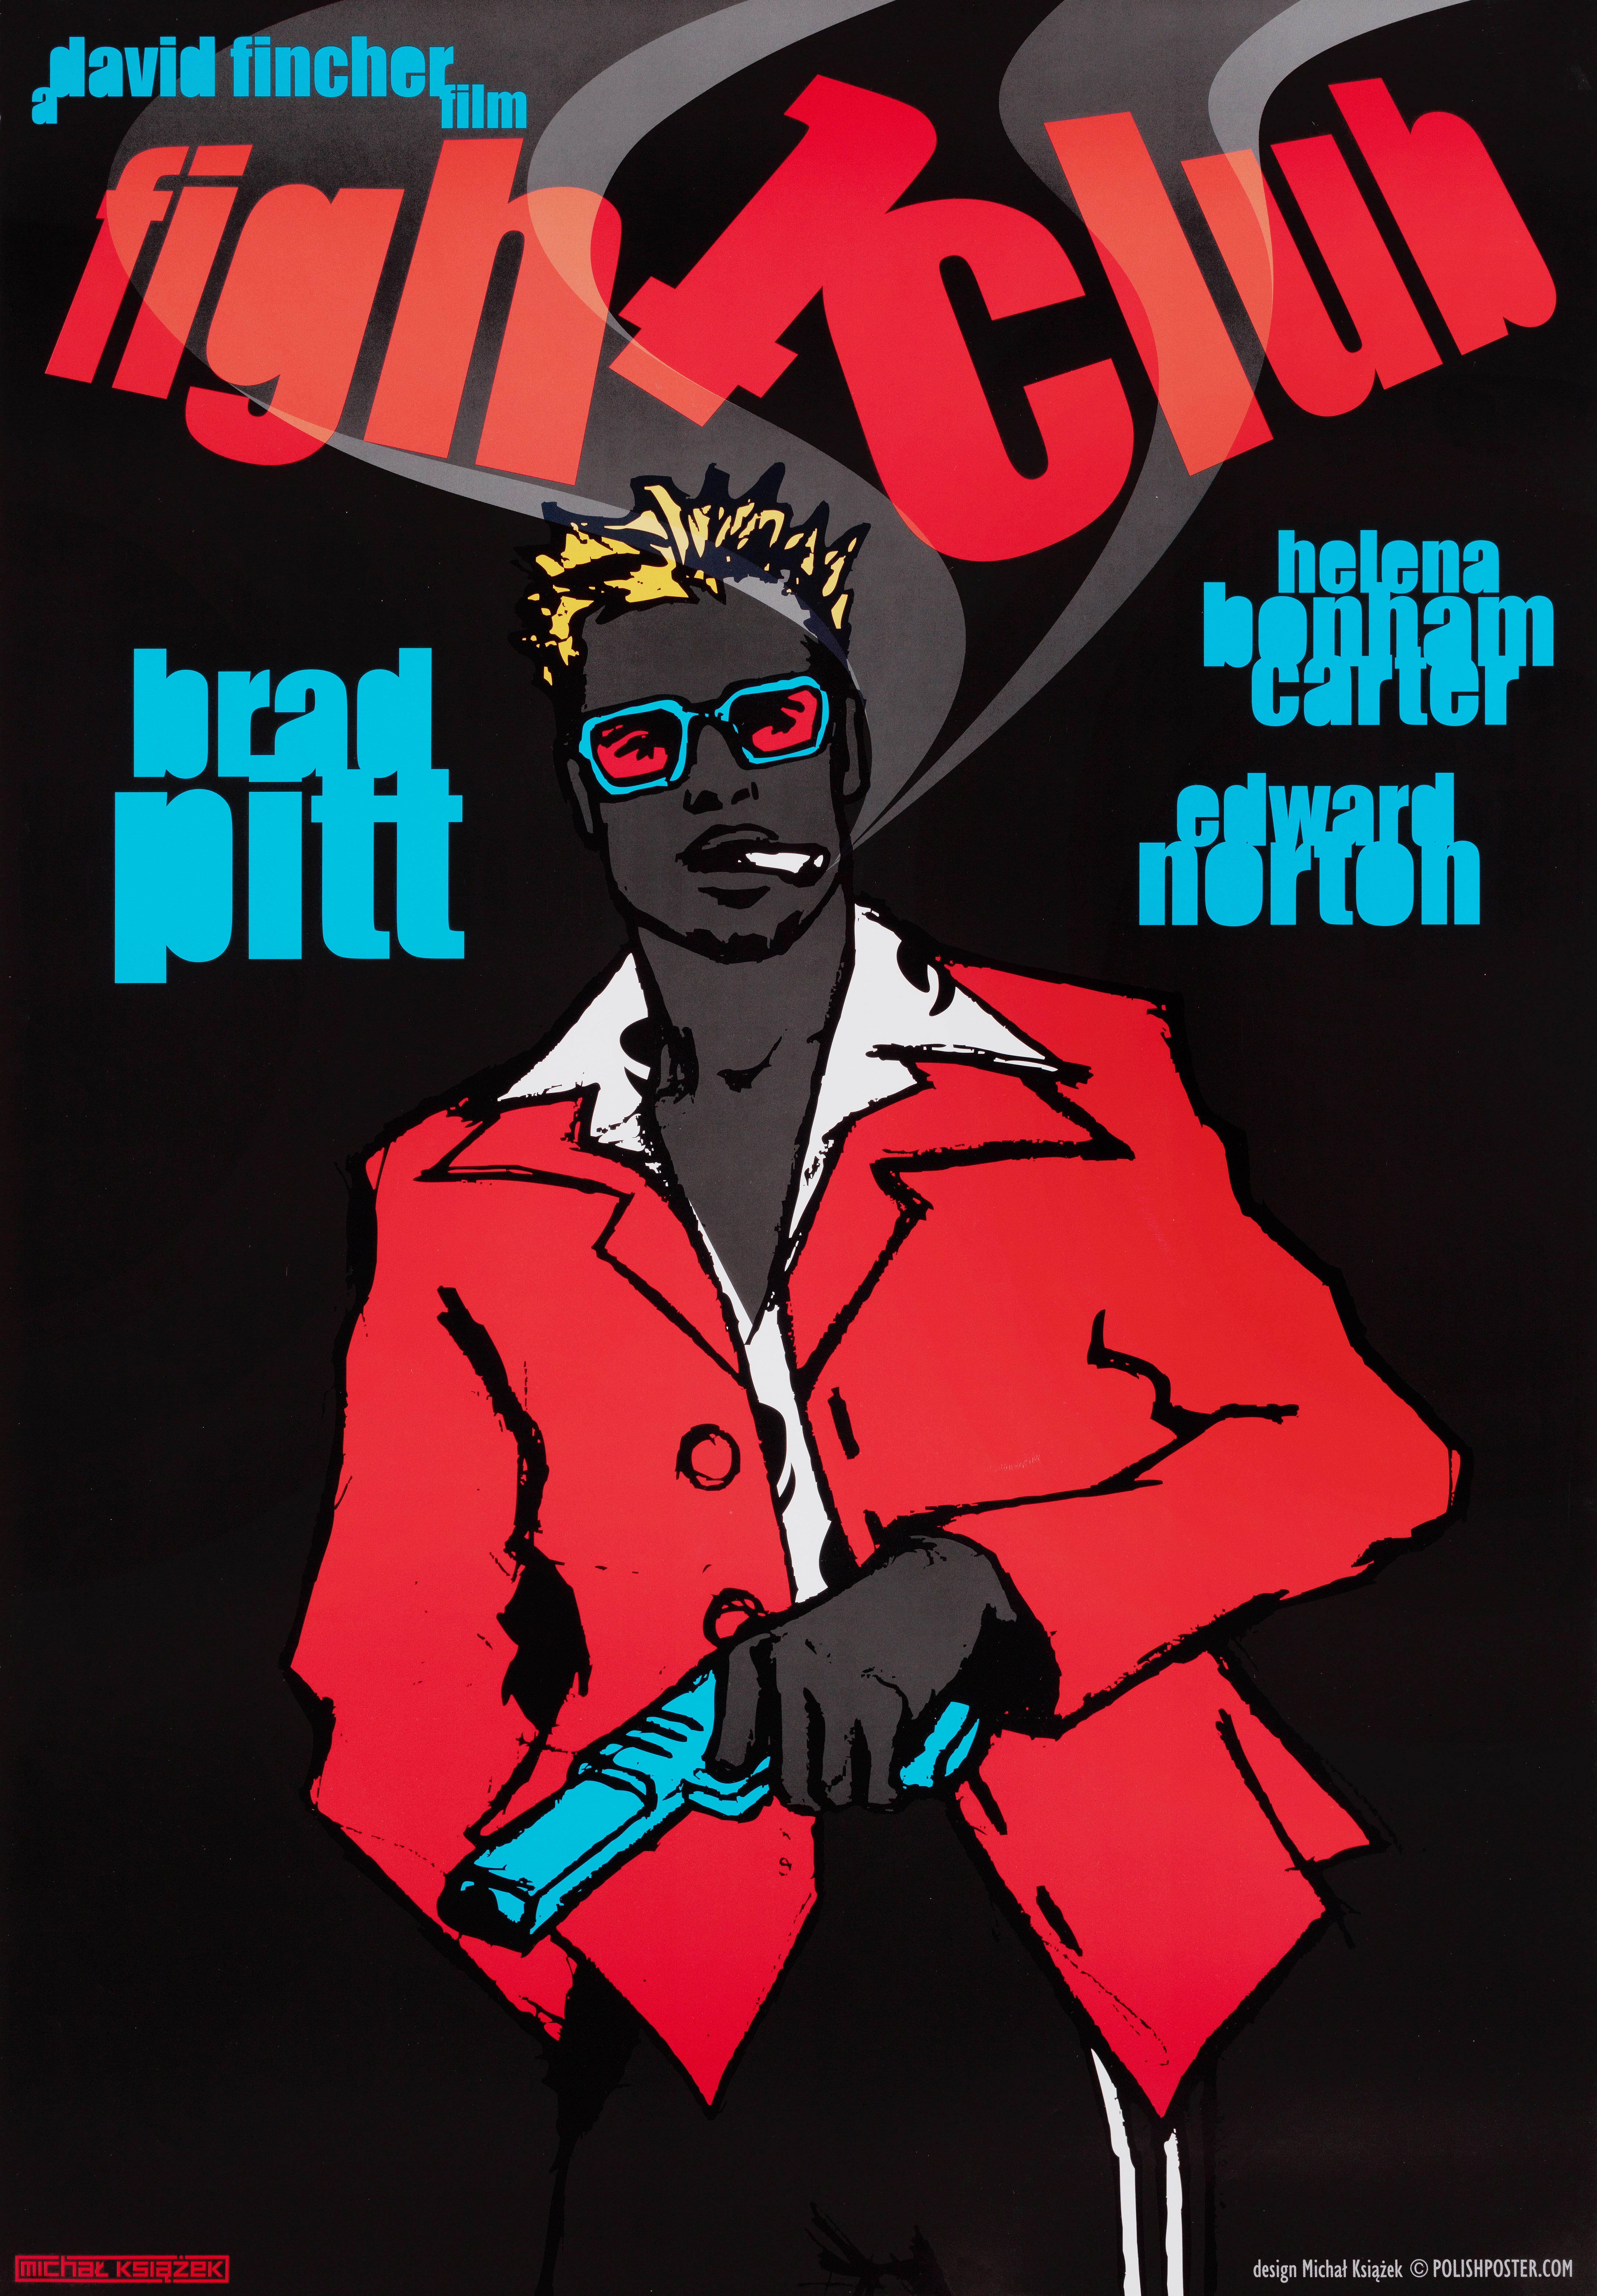 Бойцовский клуб (Fight Club, 1999), режиссёр Дэвид Финчер, польский плакат к фильму, 2009 год, автор Михал Ксязек